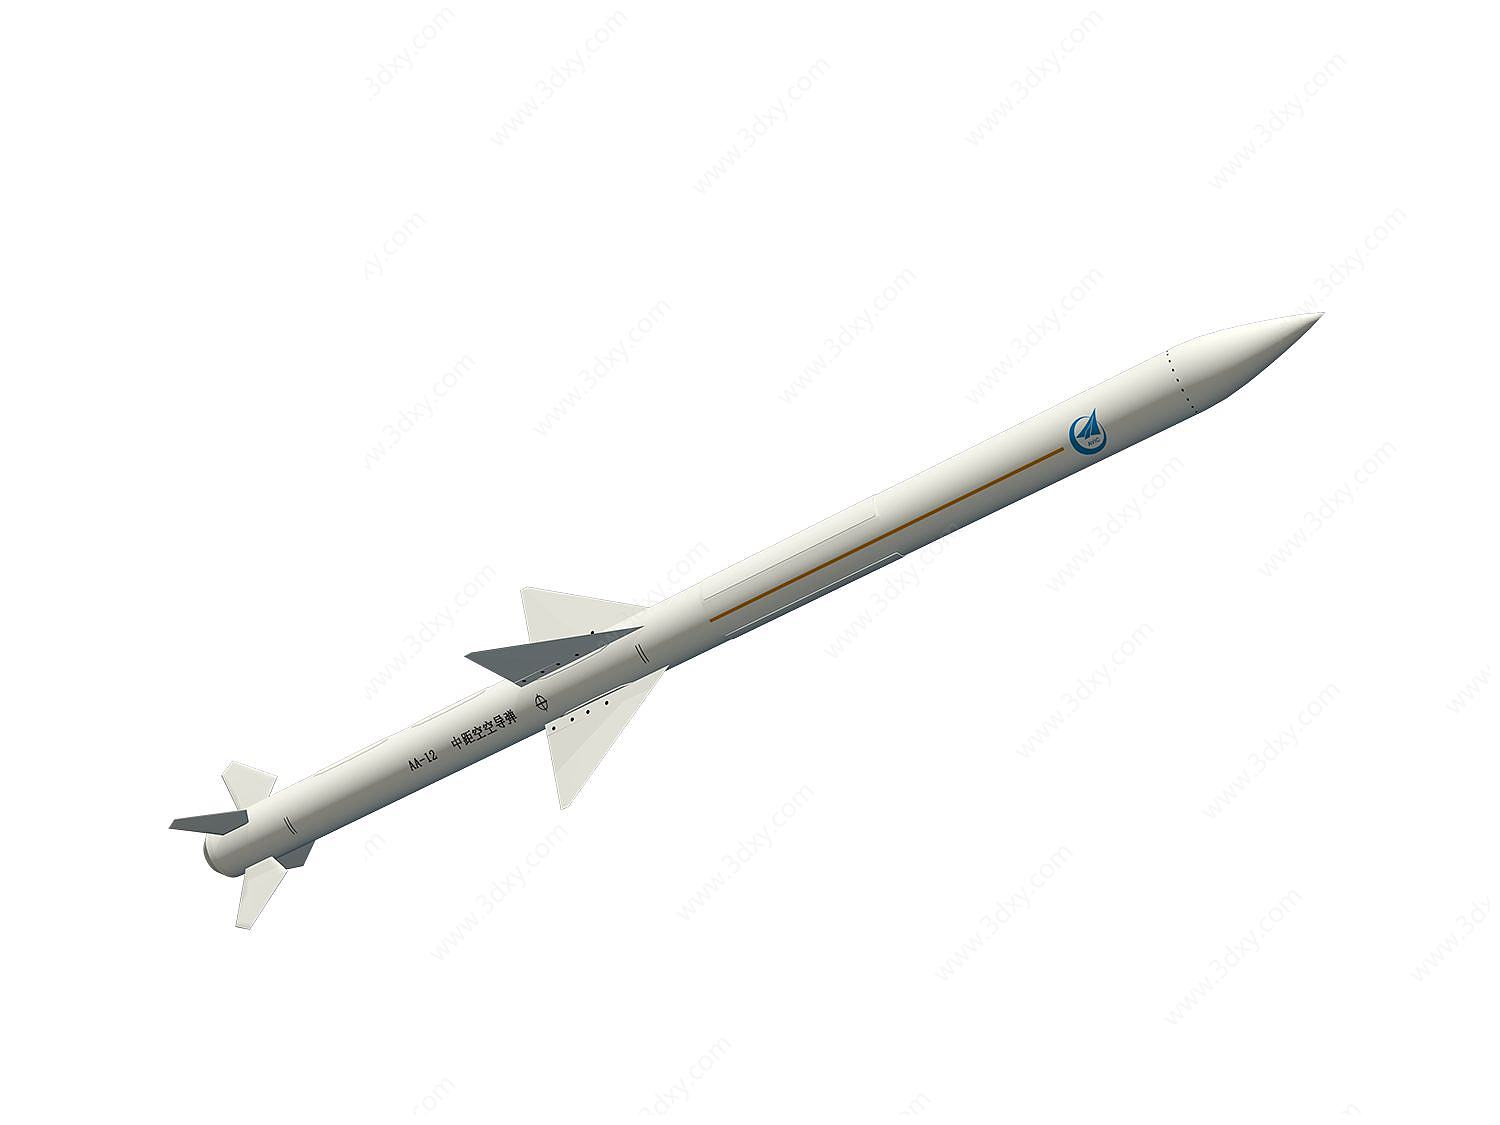 小号手1/35 萨姆-6 防空导弹_静态模型爱好者--致力于打造最全的模型评测网站